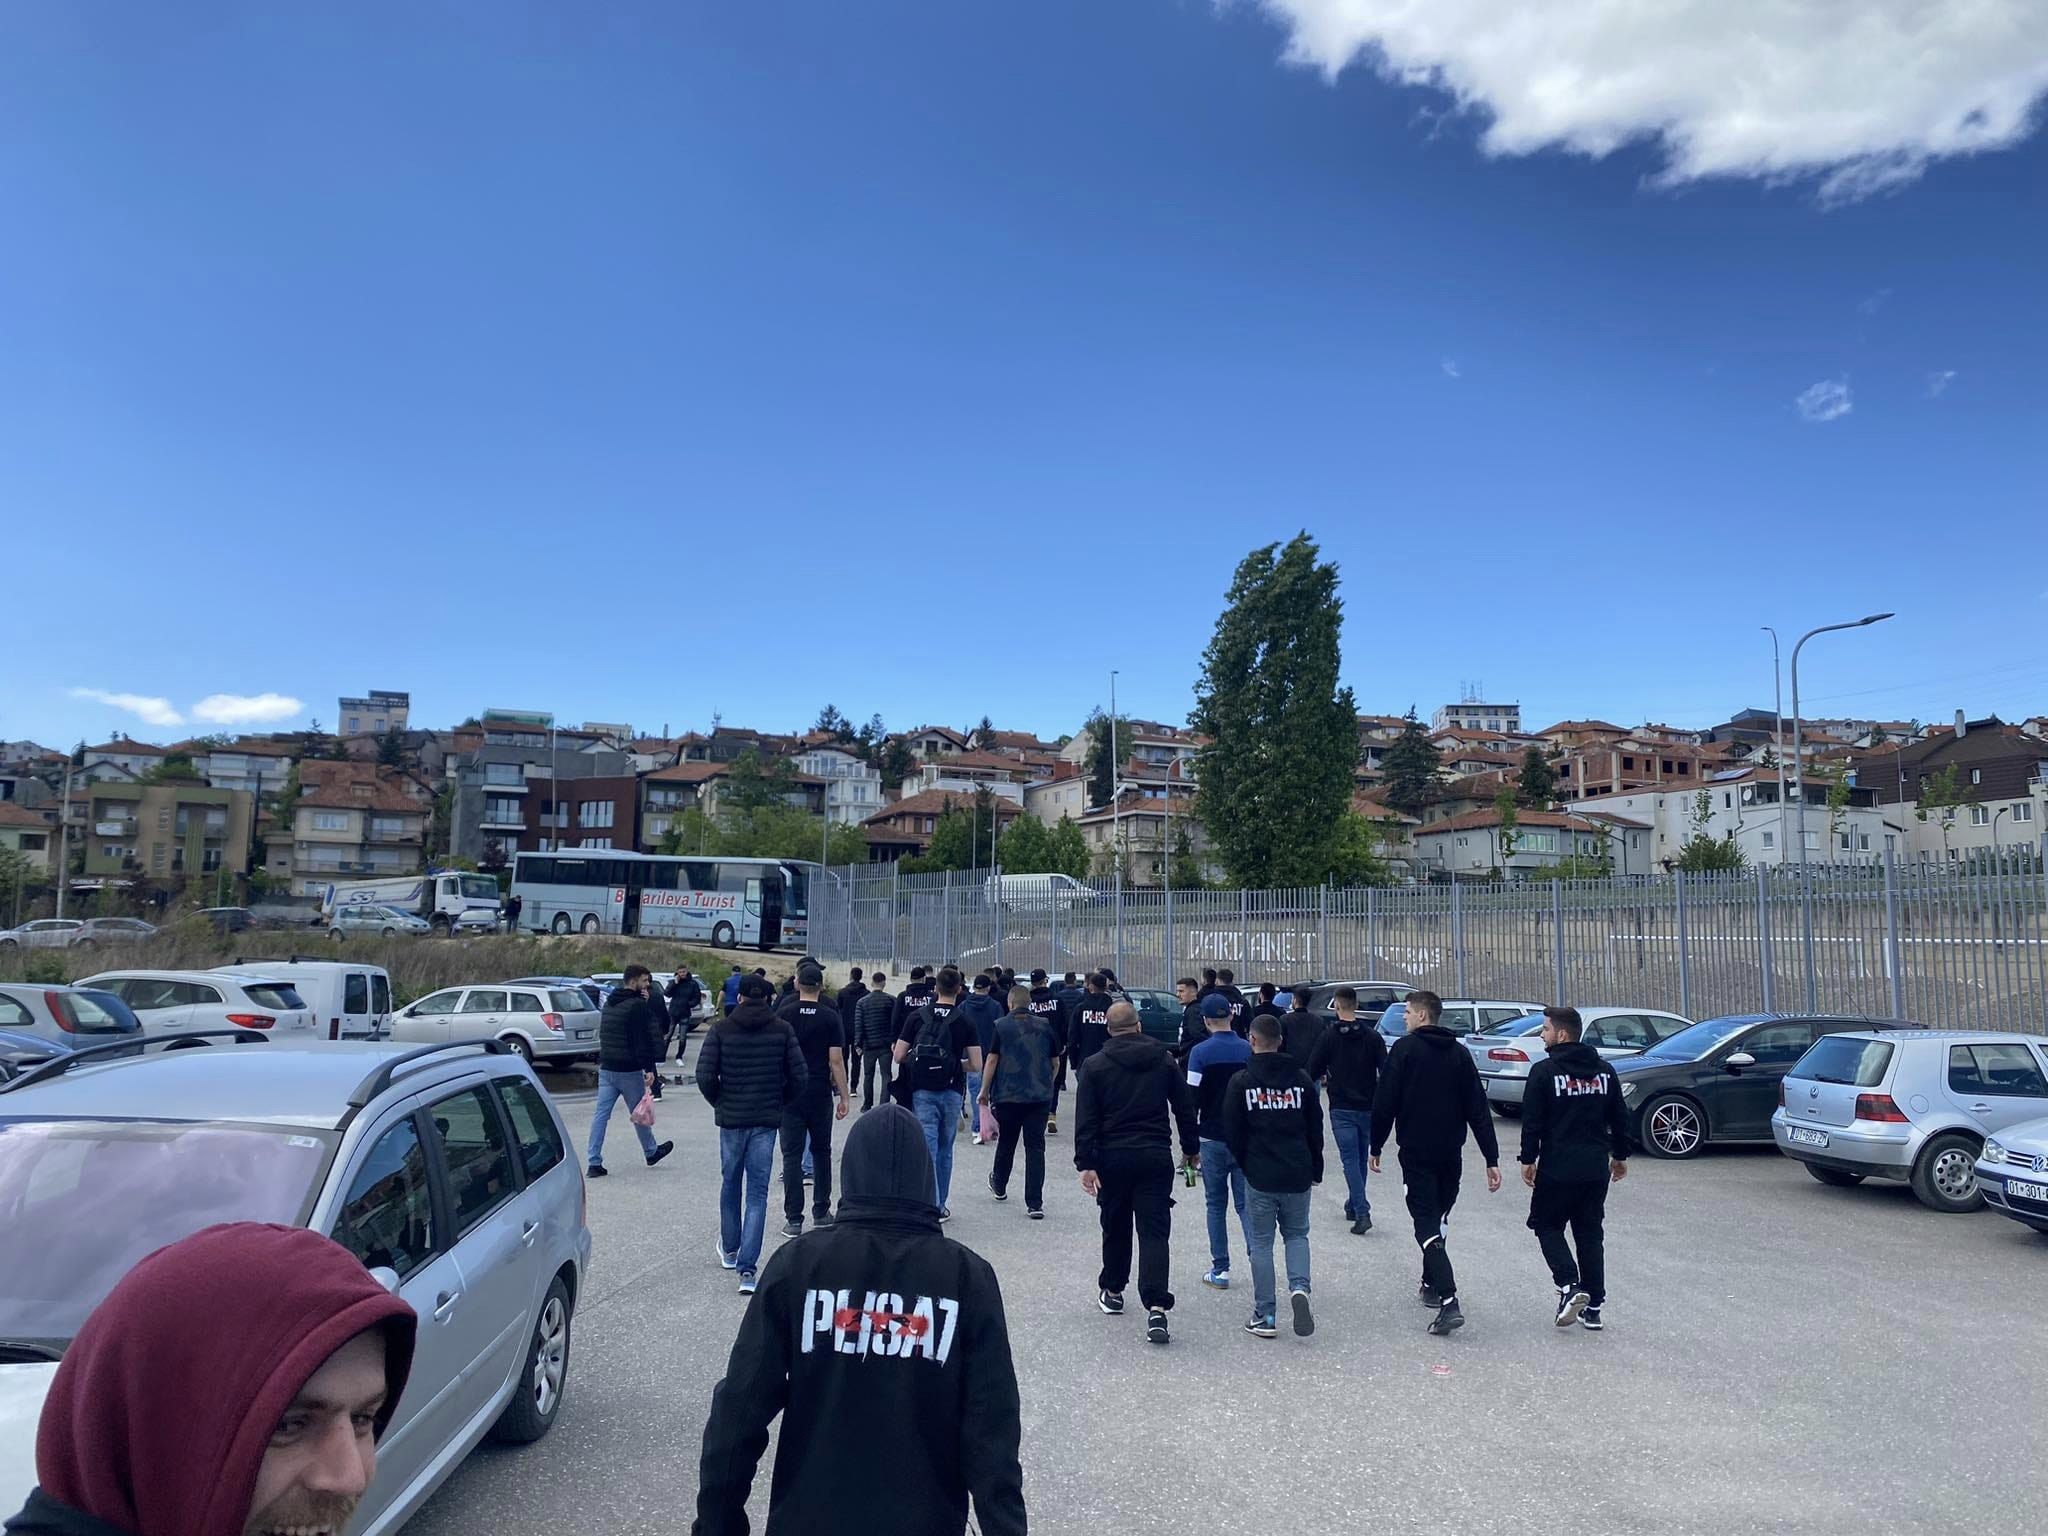  Plisat  marrin rrugë në Gjilan për ta përkrahur klubin e zemrës  por policia nuk lejoi hyrjen e tyre